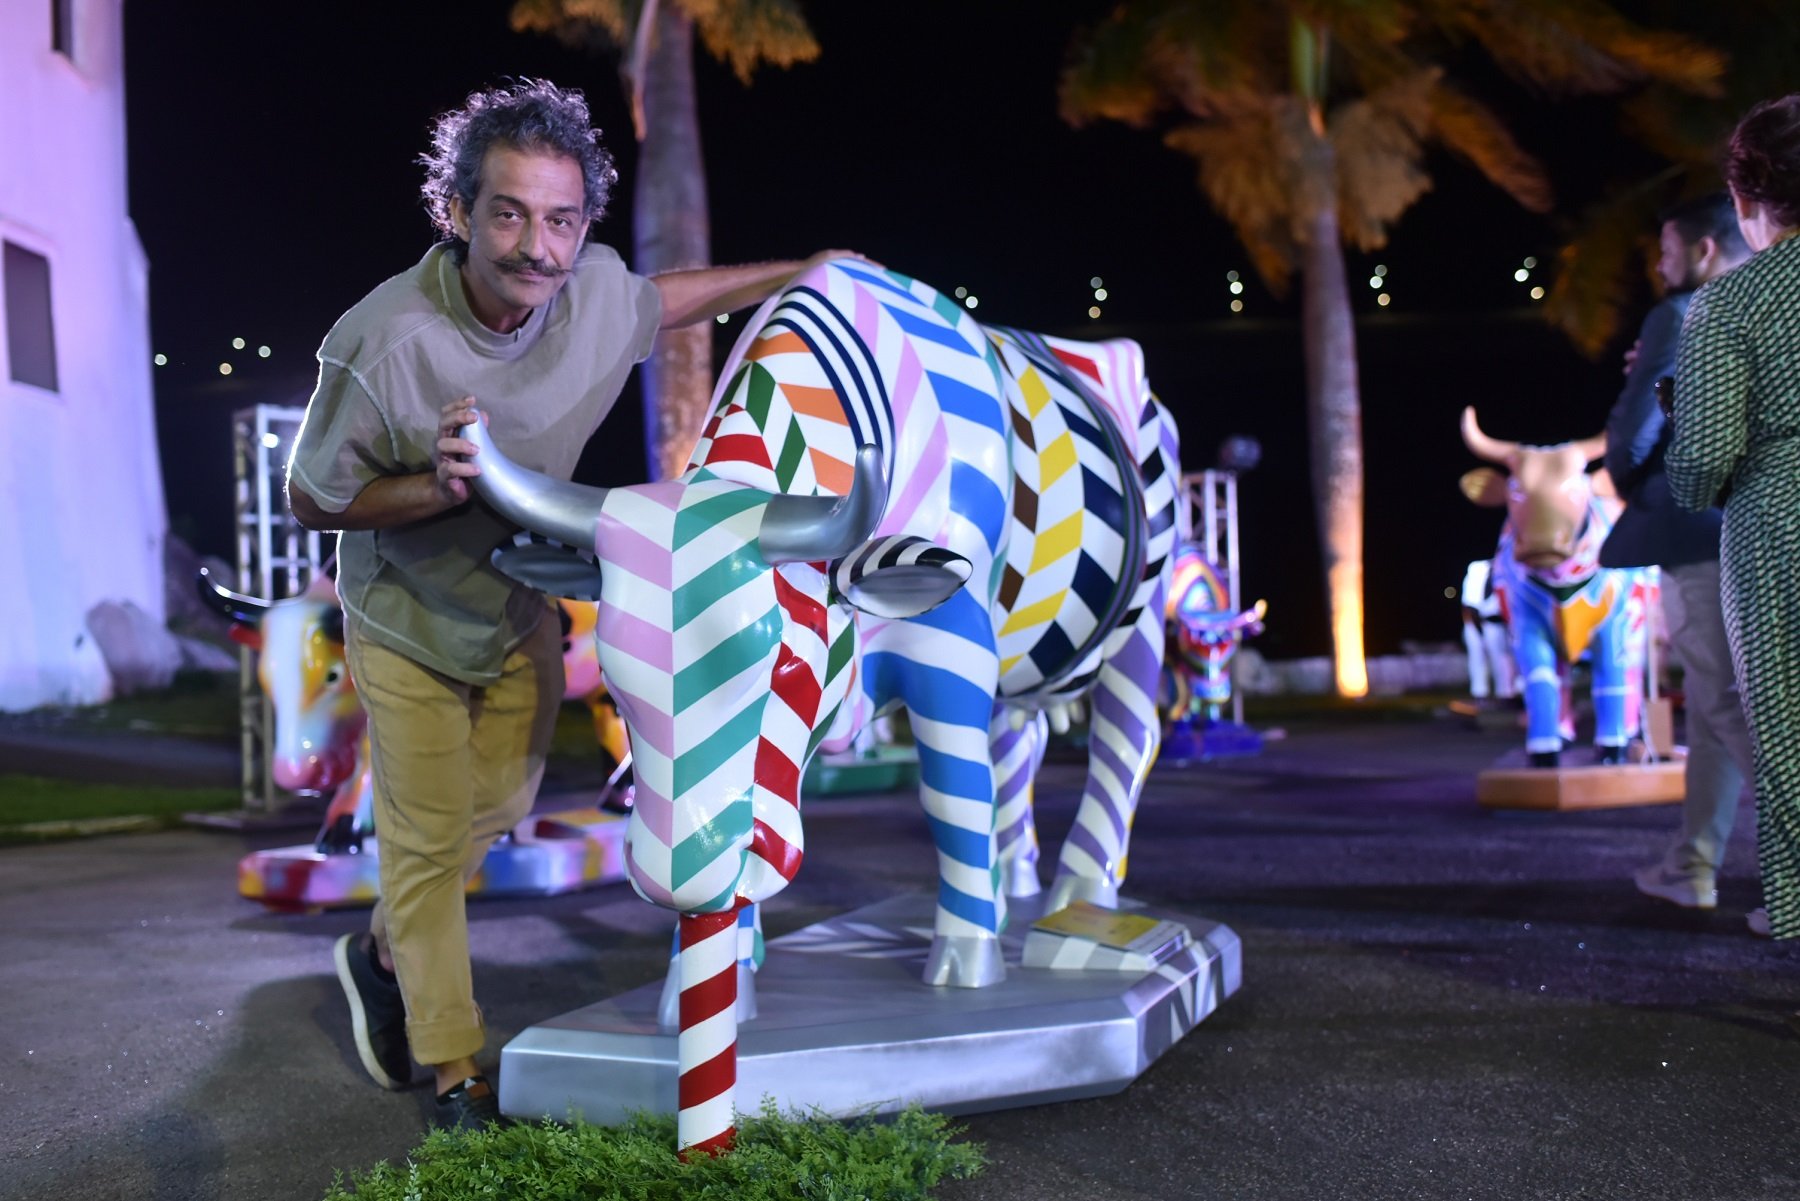 O evento marca o início da exposição de 62 esculturas de vacas, em tamanho real, feitas por artistas capixabas ou residentes no Espirito Santo